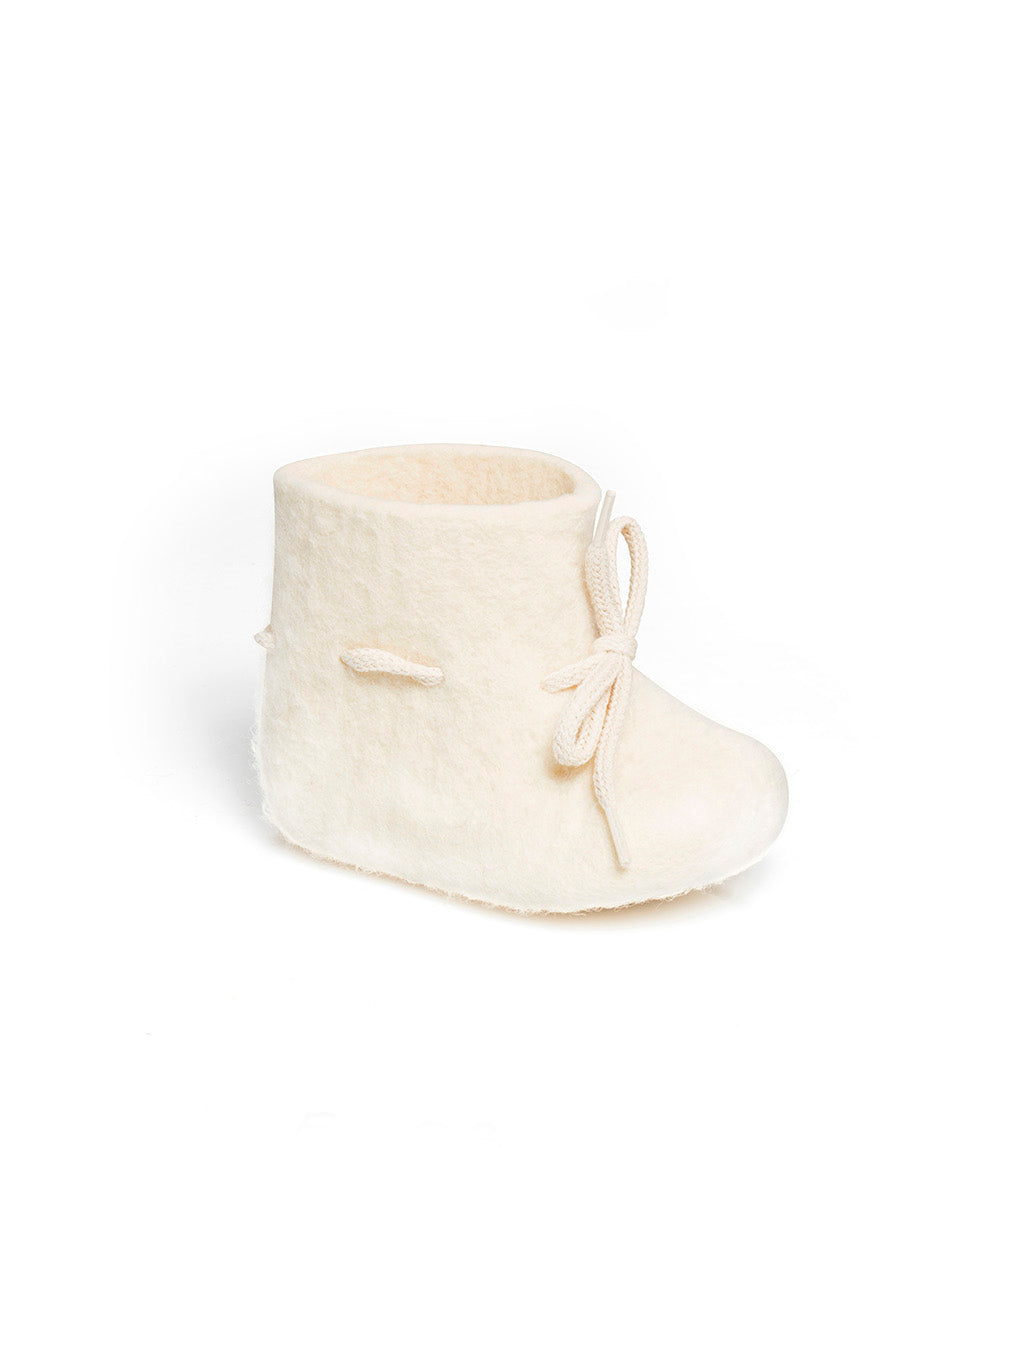 Merino wool shoe for newborn